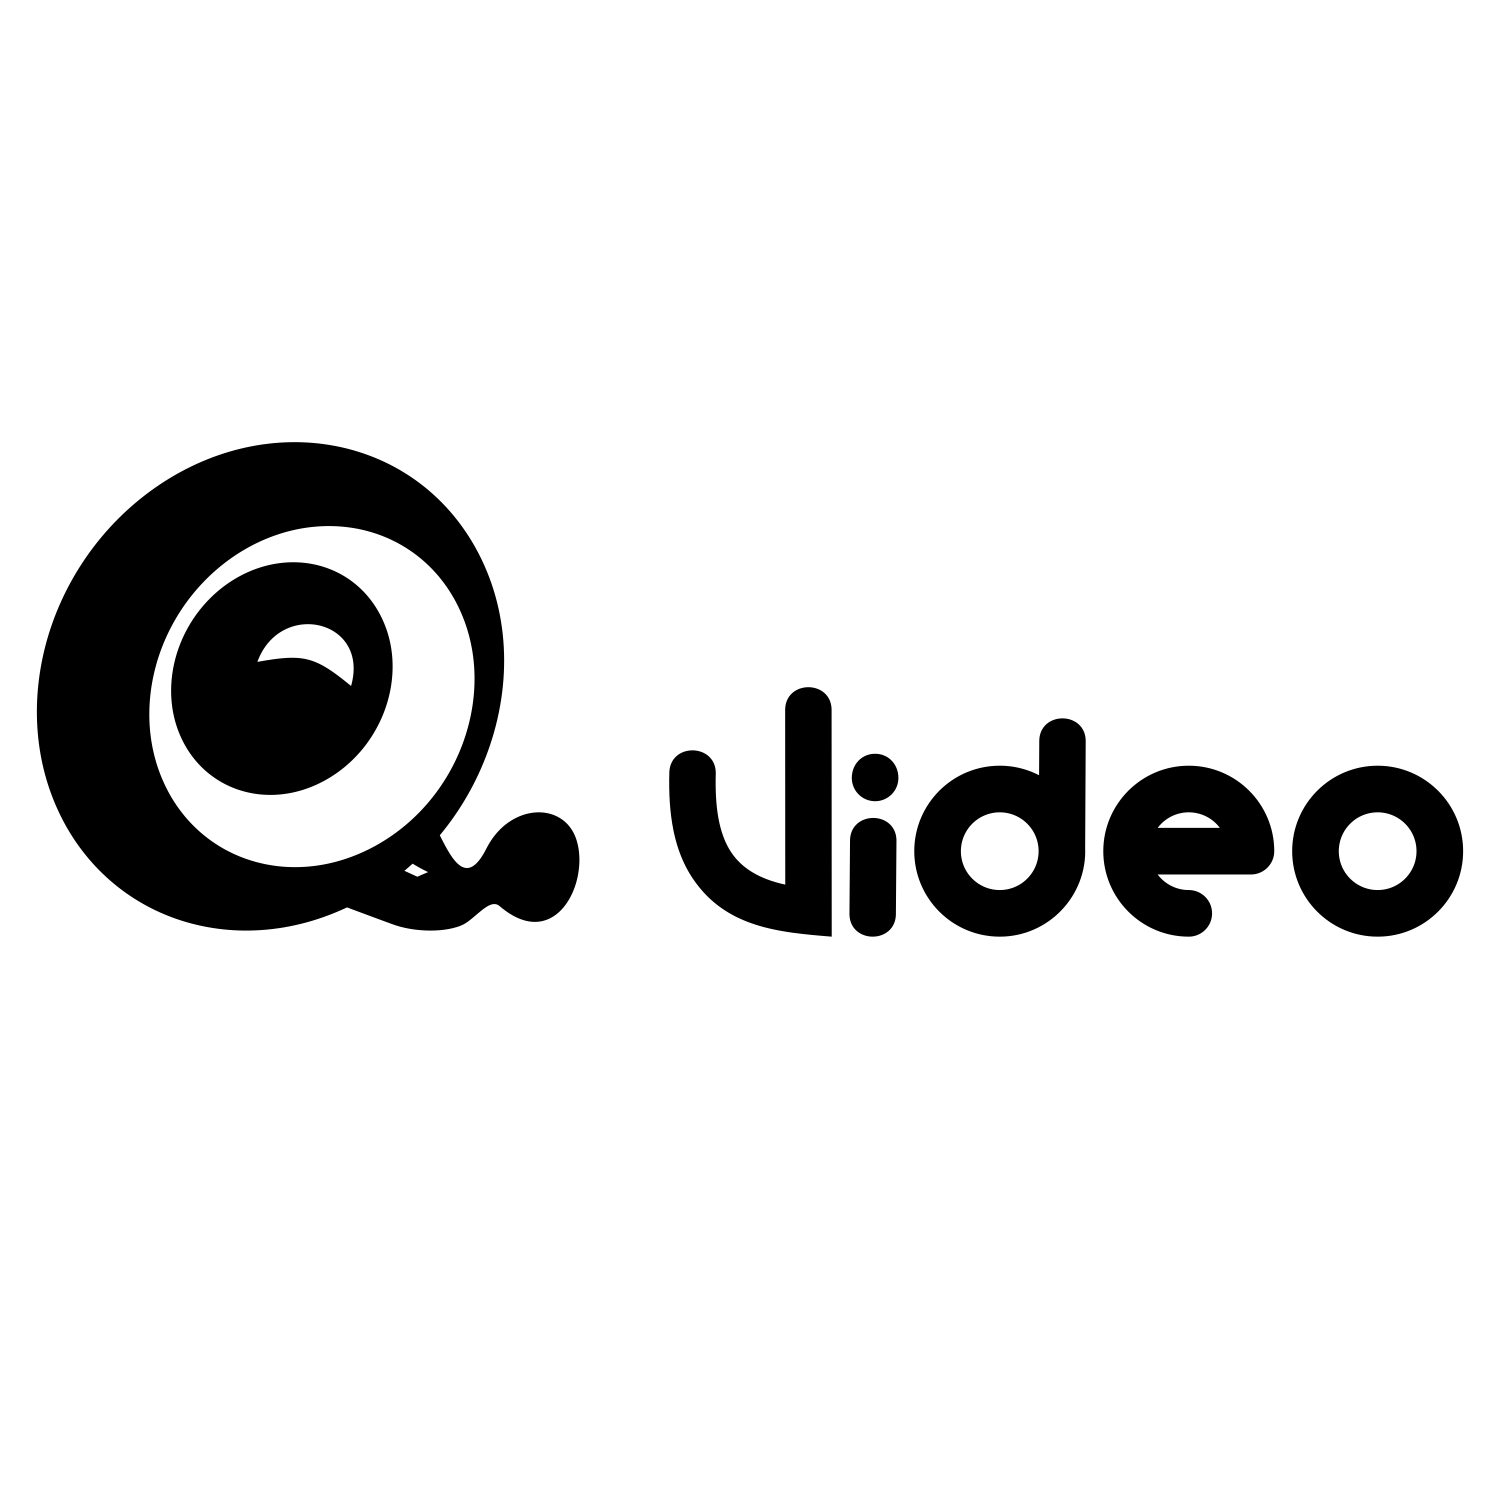 Surveillance Logo - Vector for free use: Video surveillance logo